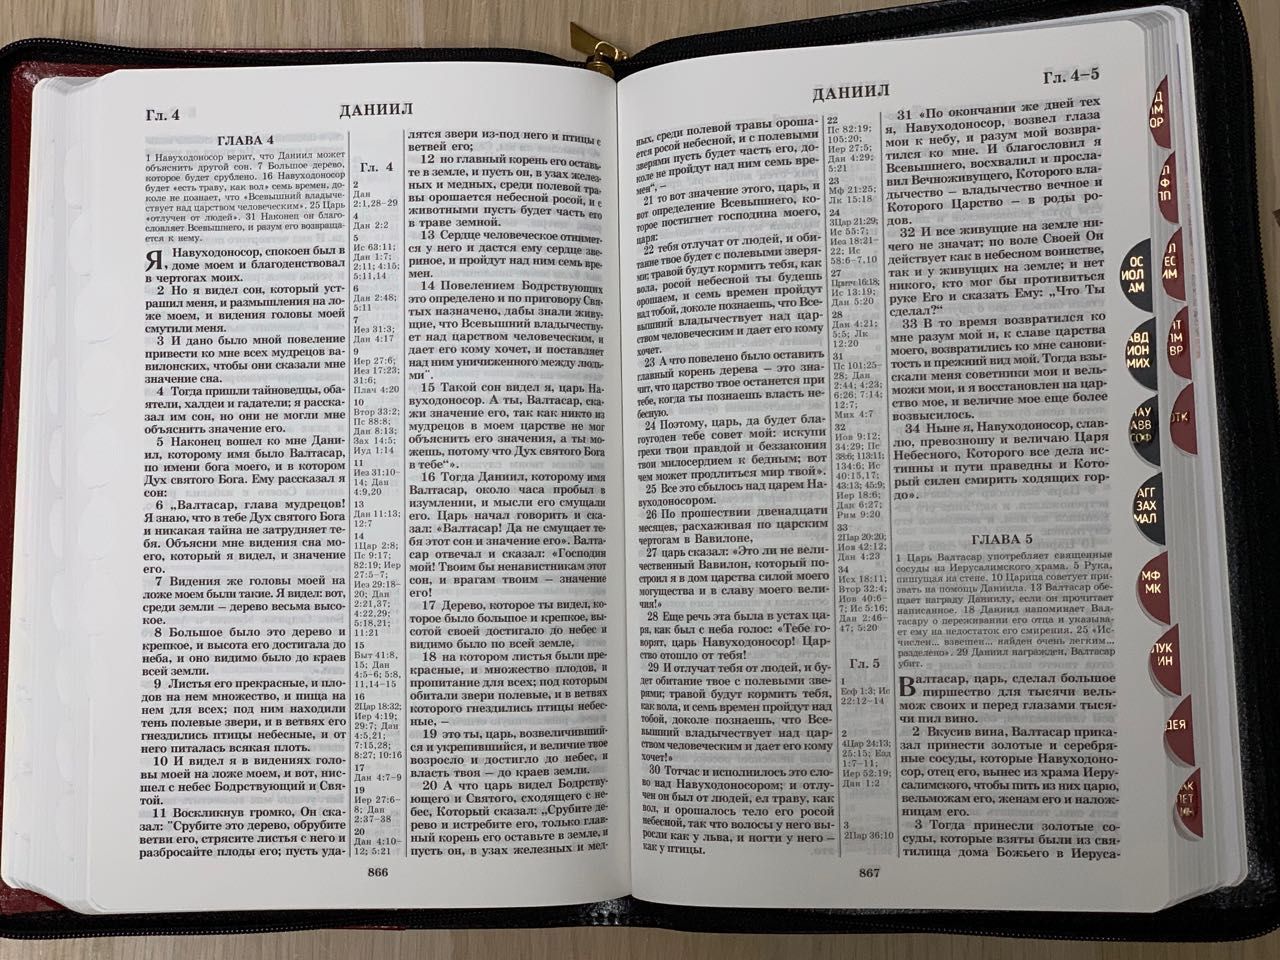 БИБЛИЯ 077DTzti формат, переплет из натуральной кожи на молнии с индексами, надпись золотом "Библия", цвет черный/ темносиний пятнистый металлик, большой формат, 180*260 мм, цветные карты, крупный шрифт